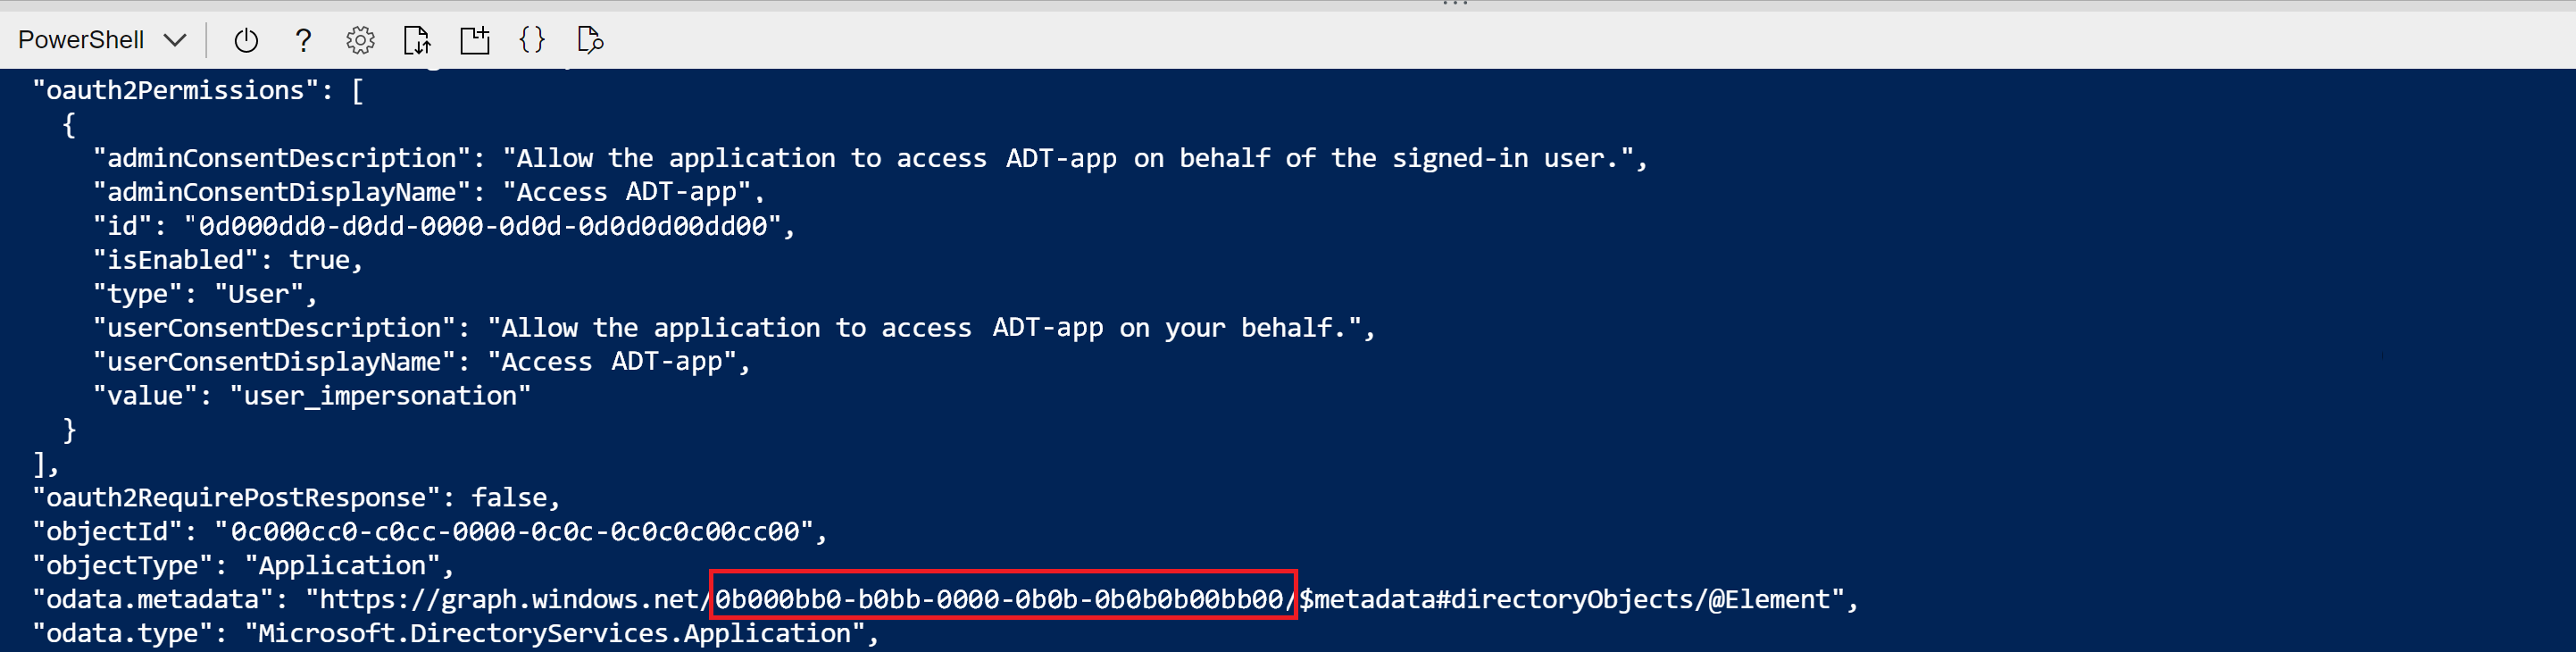 應用程式註冊建立命令的 Cloud Shell 輸出螢幕擷取畫面。odata.metadata 中的 GUID 值會醒目提示。